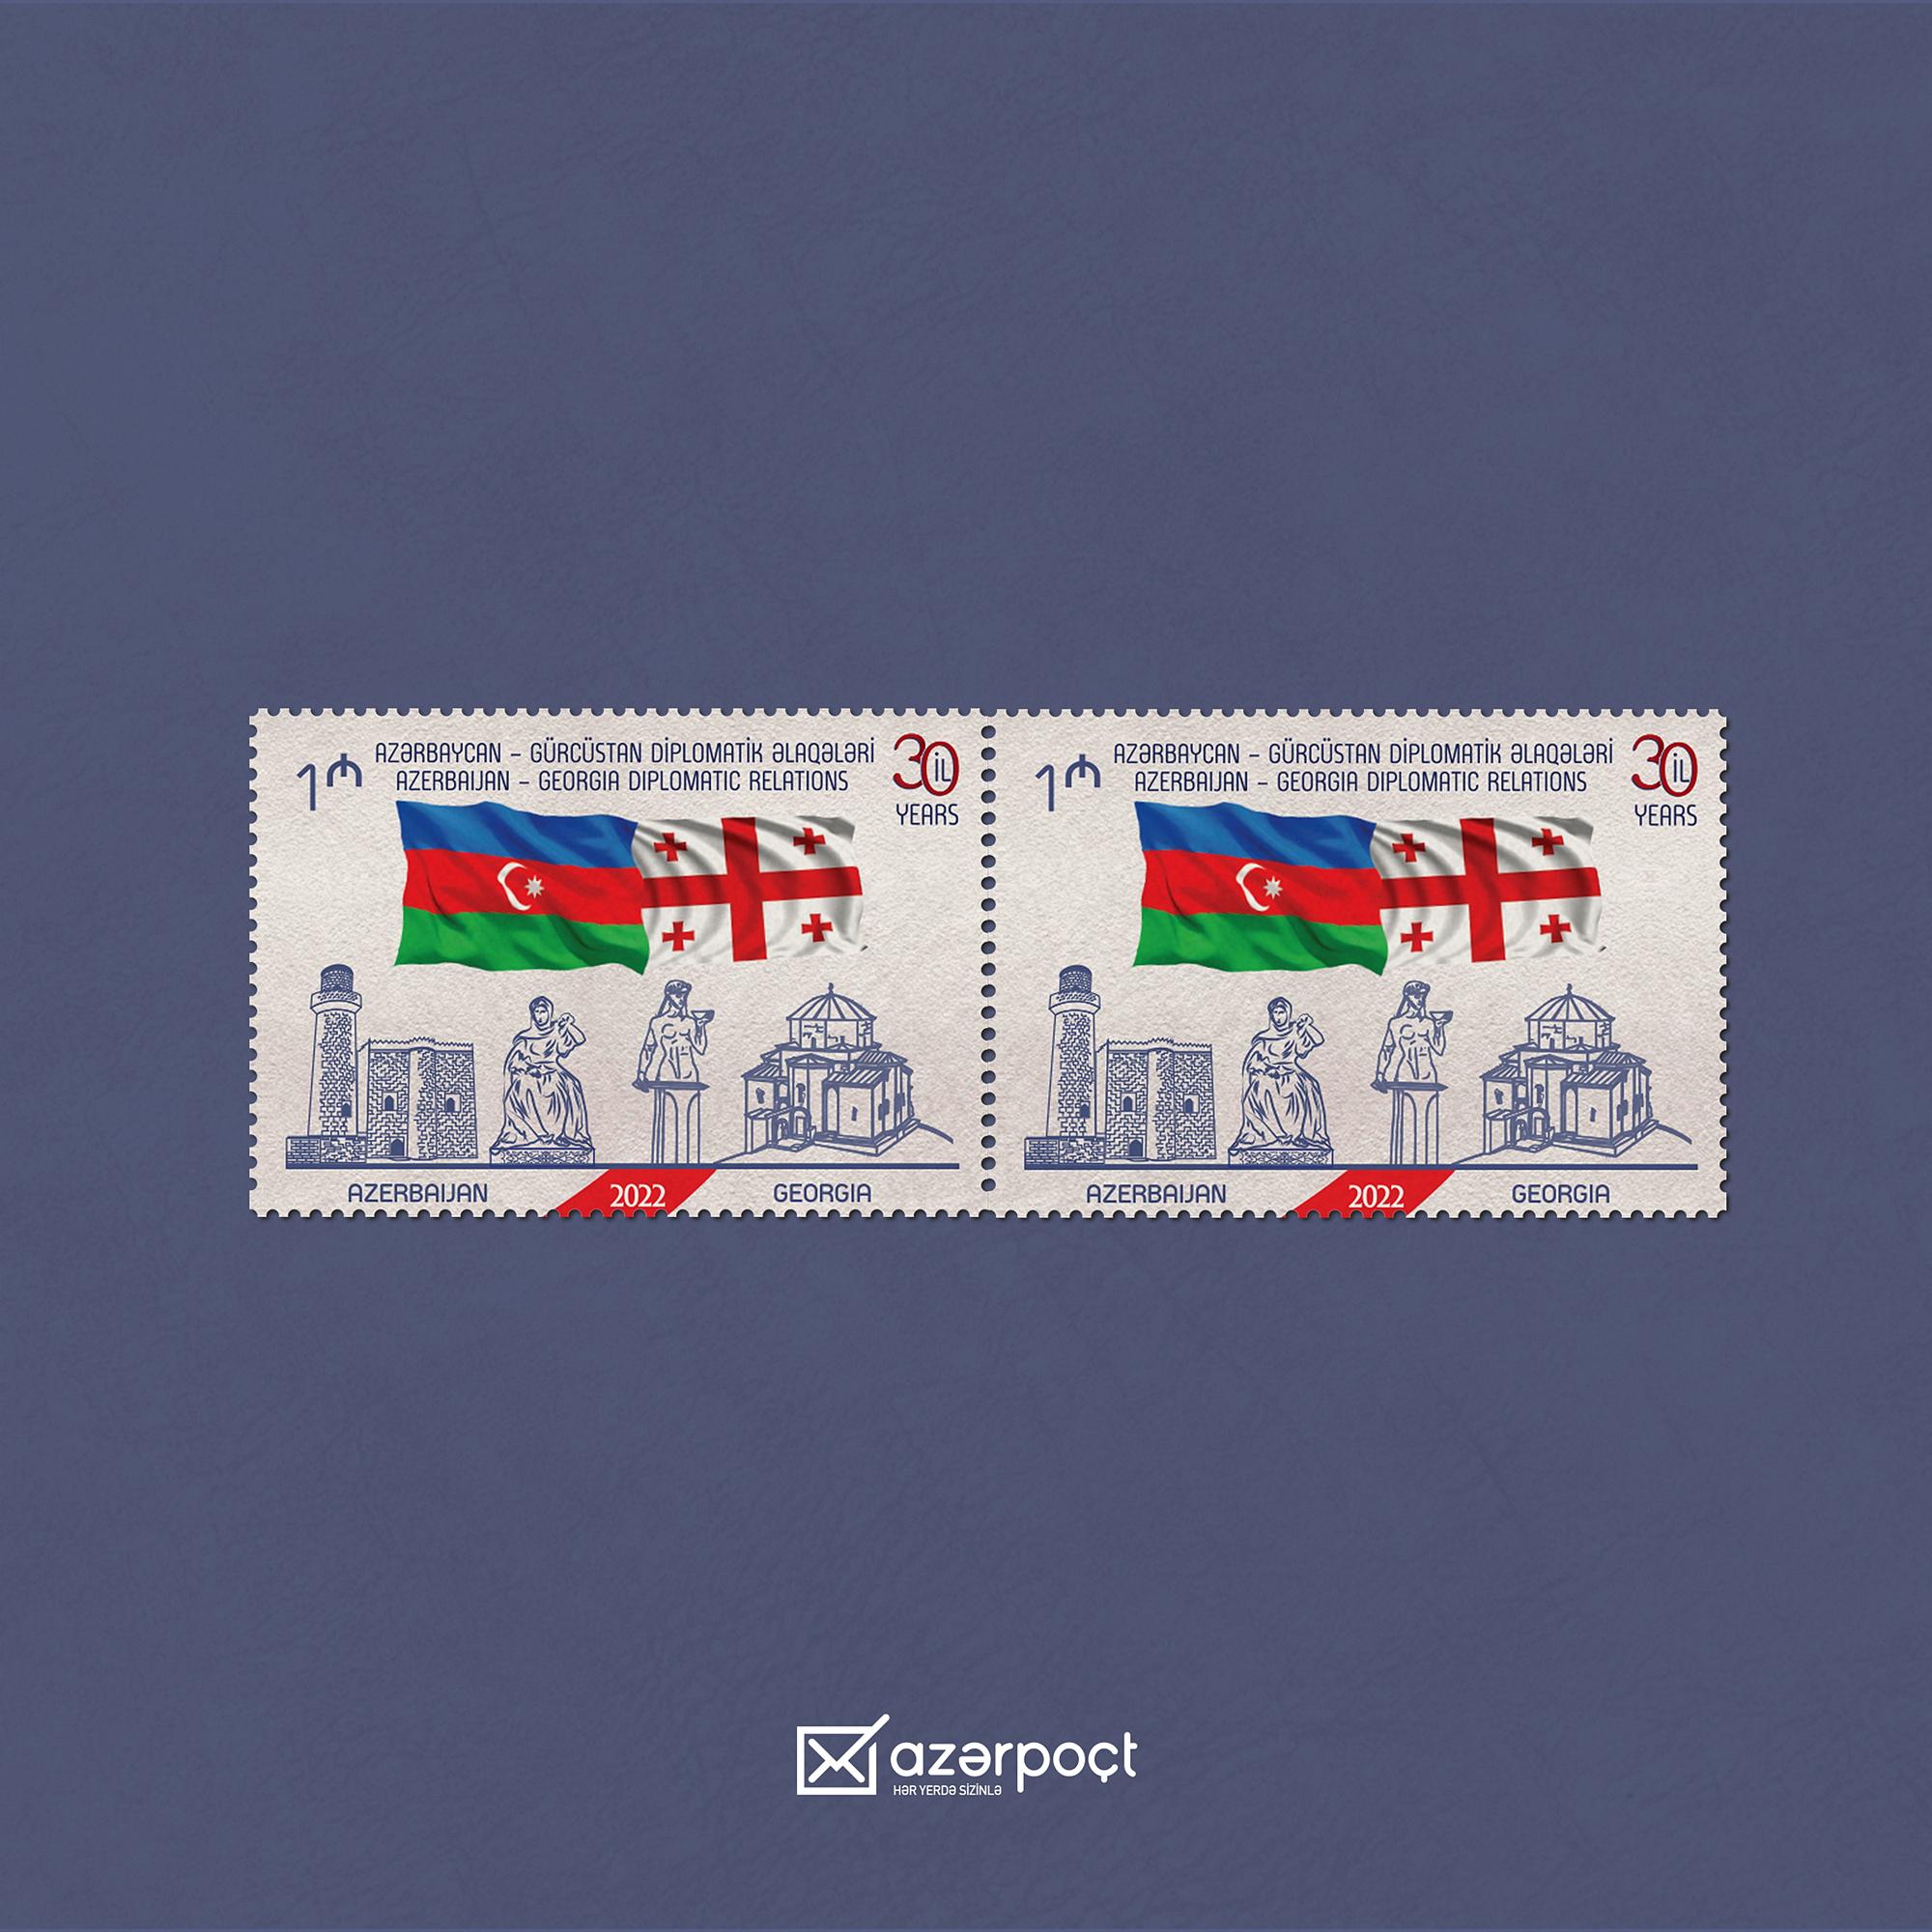 Презентована почтовая марка в связи с 30-летием азербайджано-грузинских связей